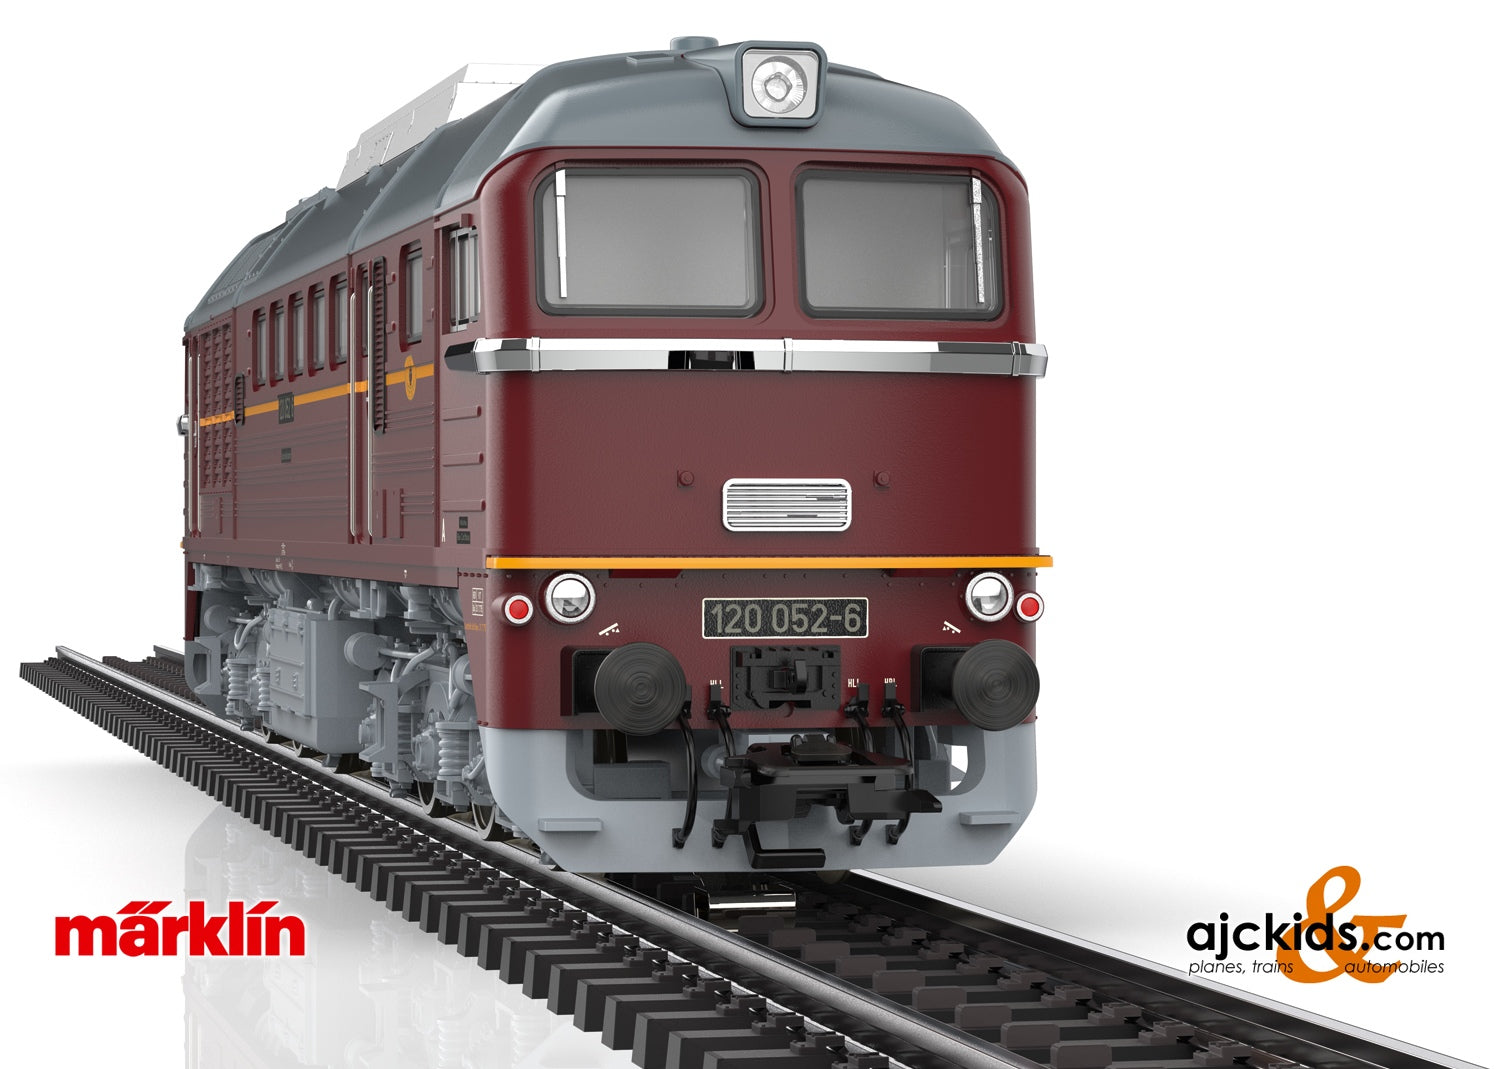 Marklin 39200 - Class 120 Diesel Locomotive at Ajckids.com